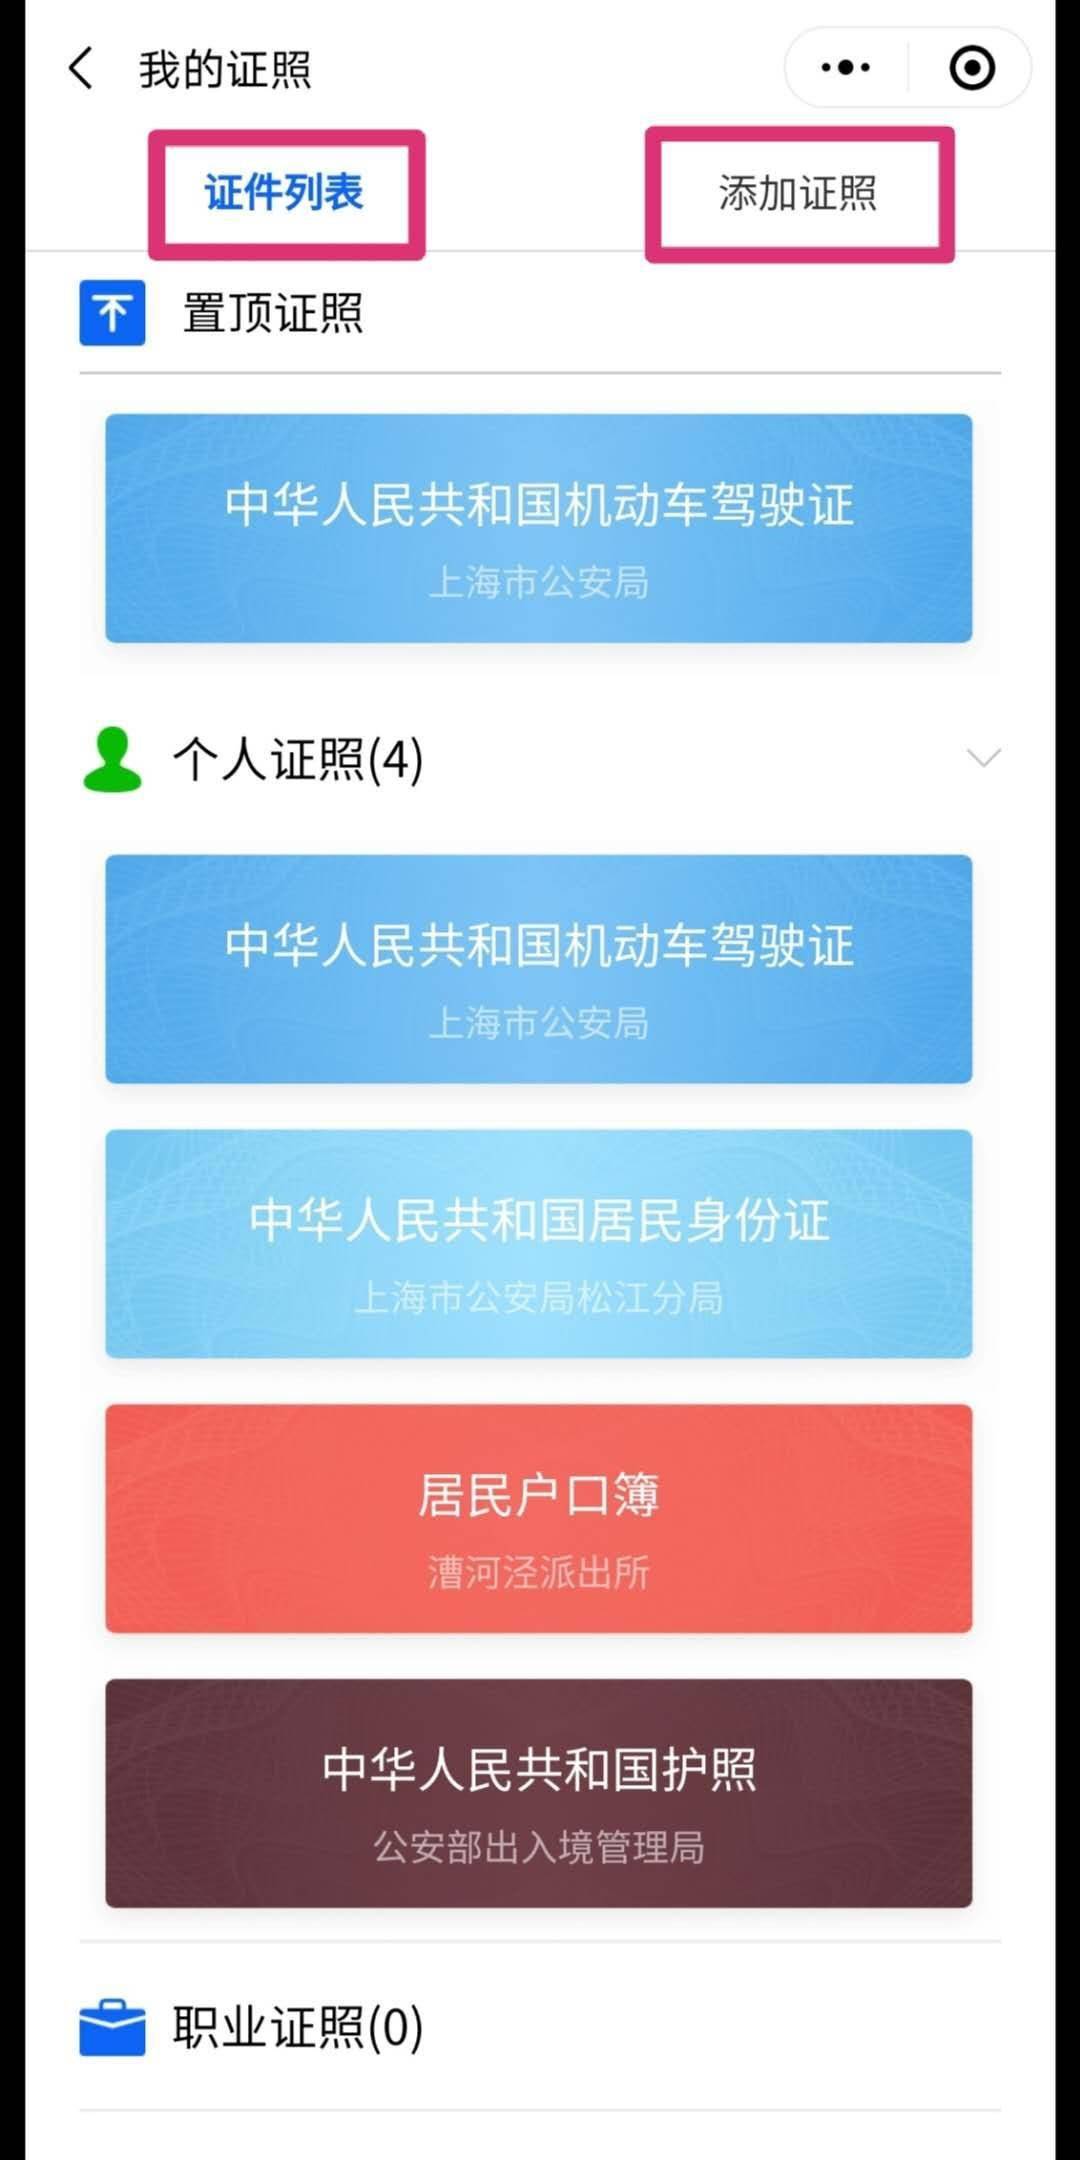 9月 30 日起,上海江苏浙江安徽电子驾照互认